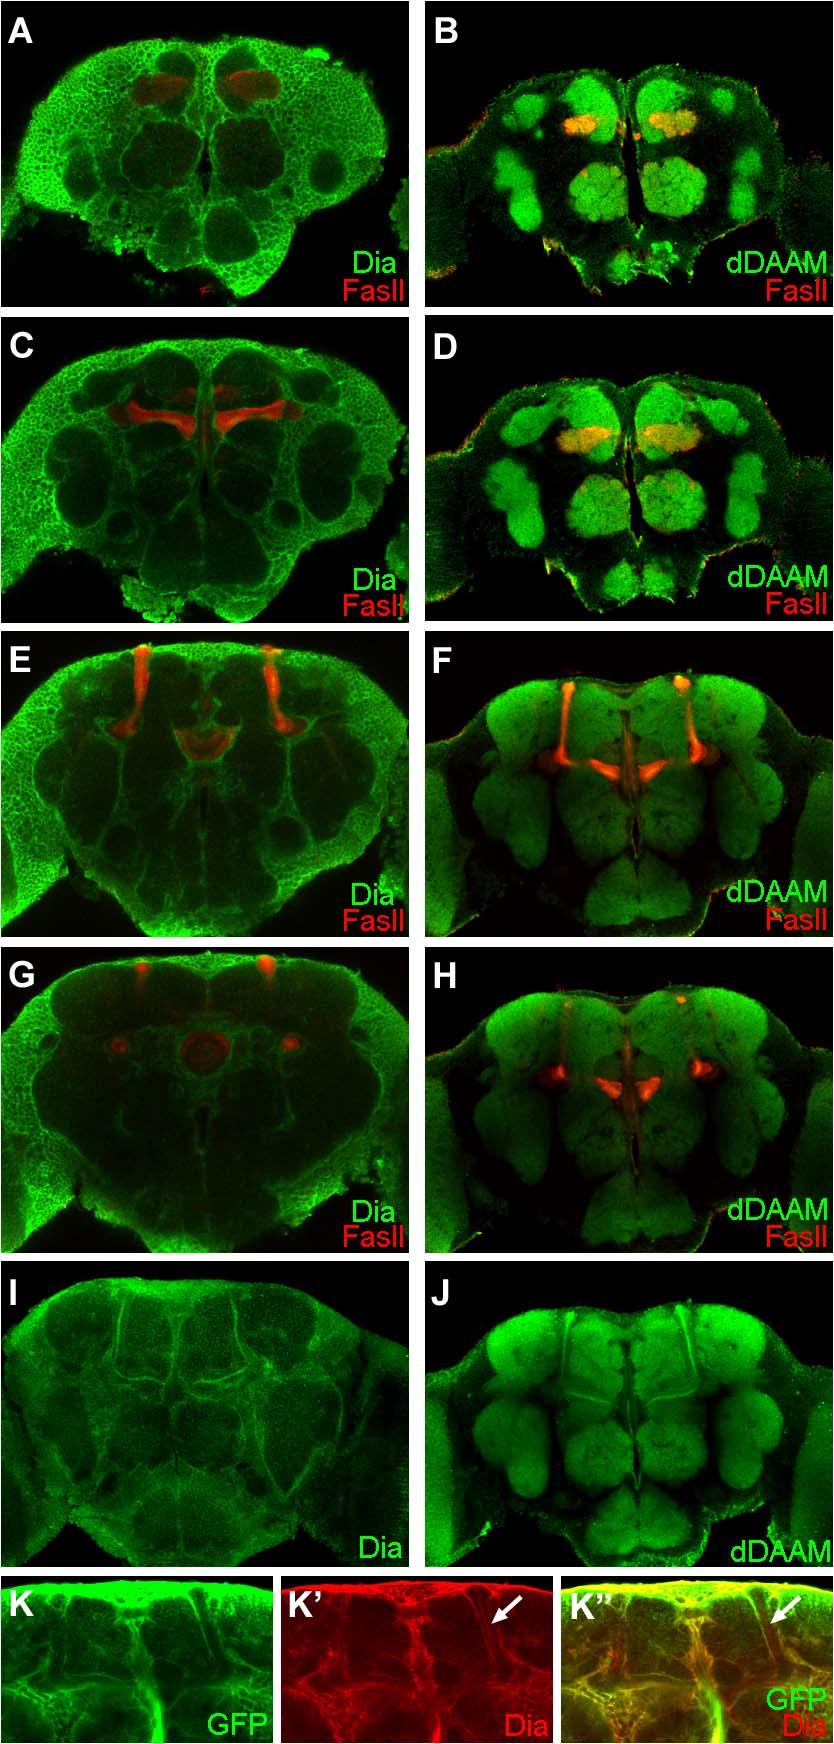 34. ábra A Dia és a ddaam lokalizációjának összehasonlítása Drosophila agyban.